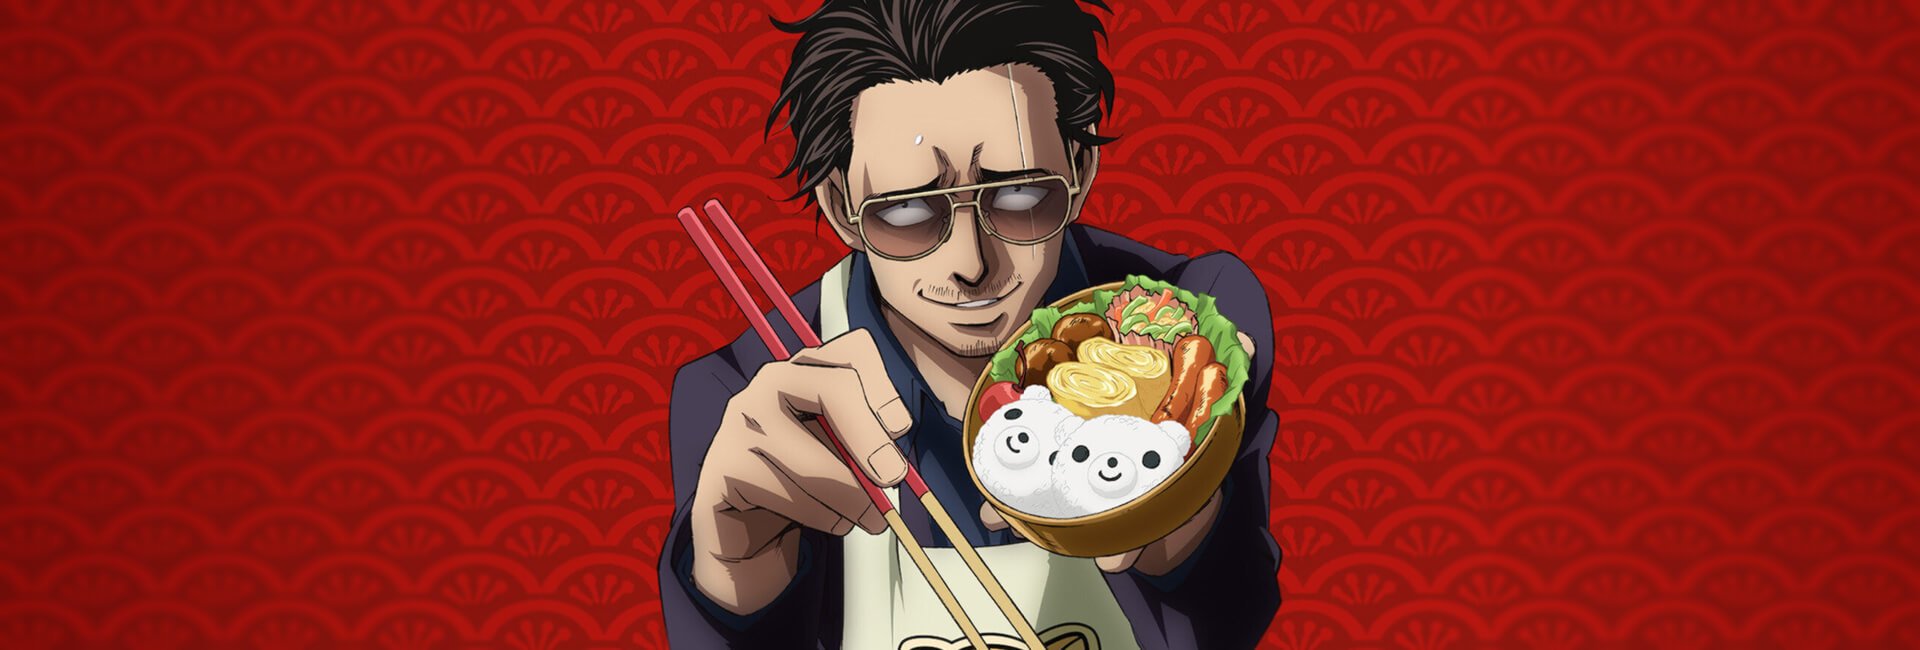 Na imagem Tatsu "o irmotal" está com uma cara amedrontadora segurando um pote com lamem e hashis, o arroz no pote tem um rosto sorrindo. Tatsu veste um óculos escuros, possui uma cicatriz vertical no olho esquerdo e usa um avental